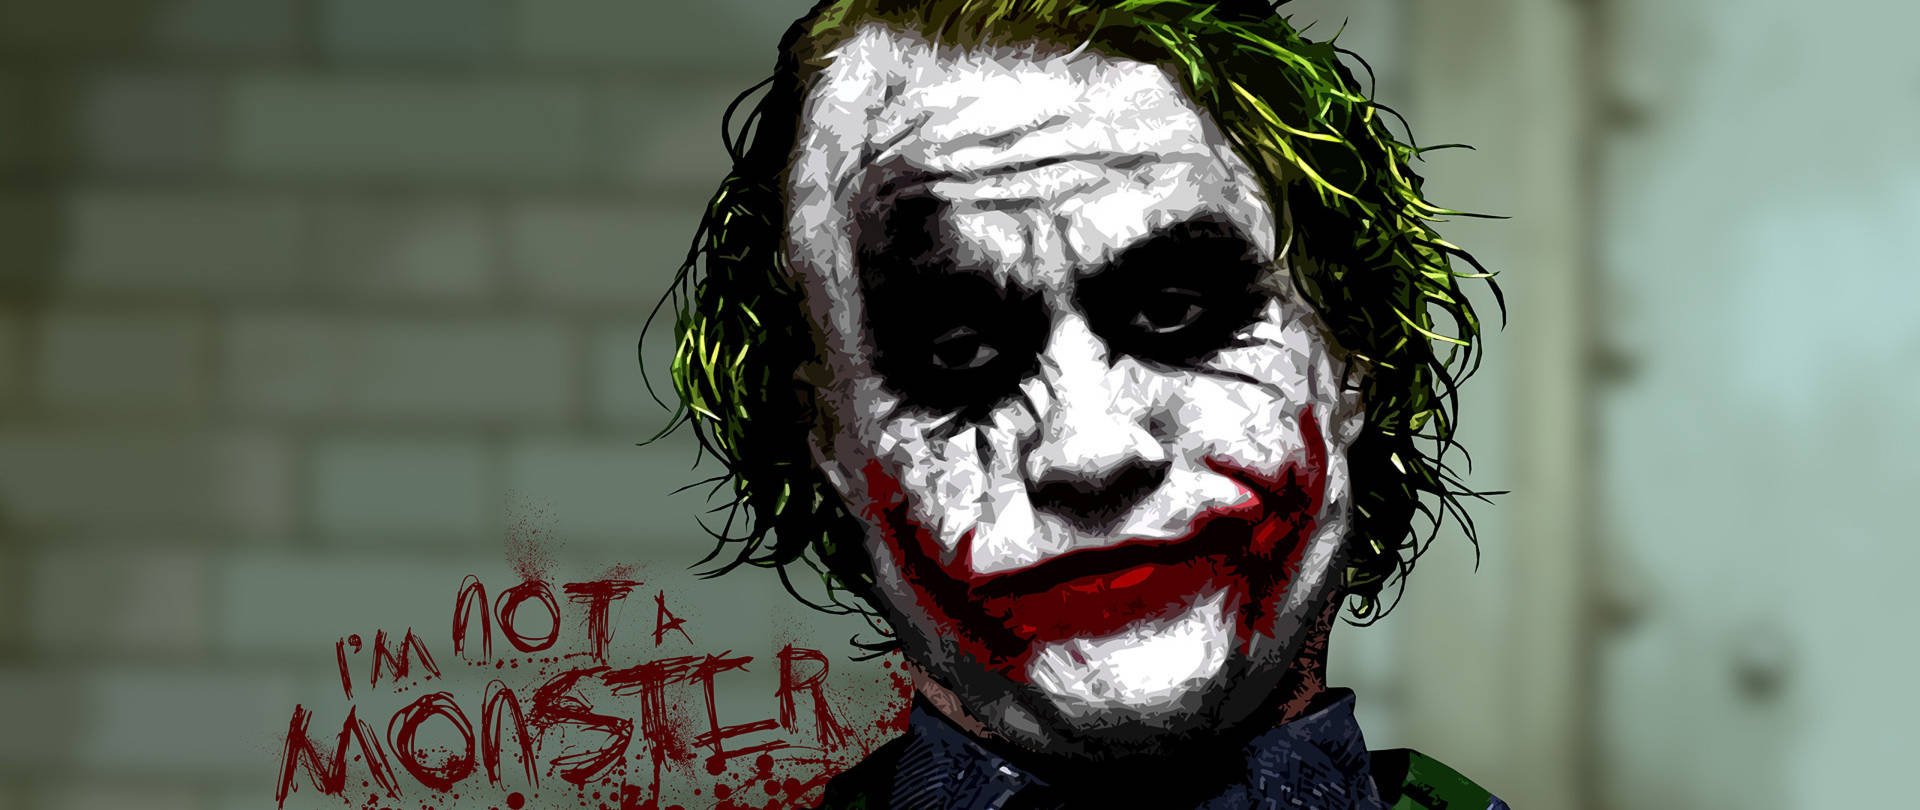 Joker,ich Bin Kein Monster, 4k Ultra Hd. Wallpaper